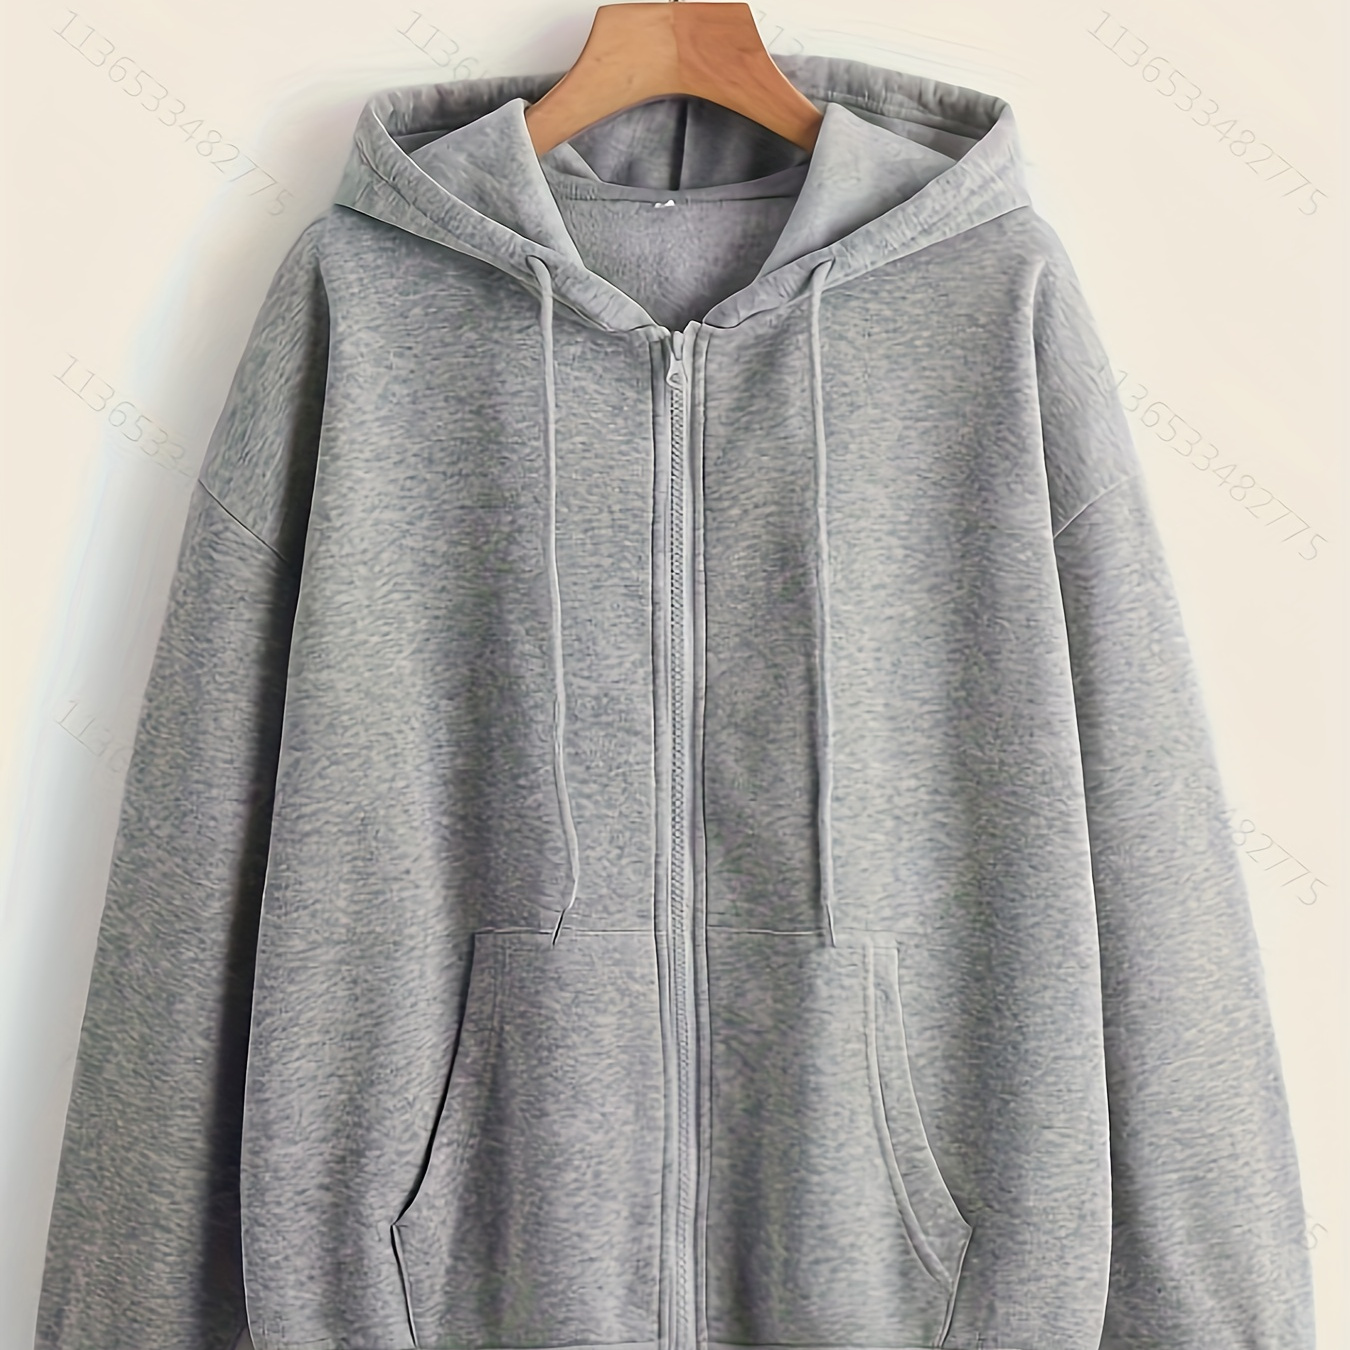 

Solid Color Drawstring Pocket Zip Up Thermal Lined Hoodie, Long Sleeve Hooded Sweatshirt Jacket, Women's Sporty Sweatshirt